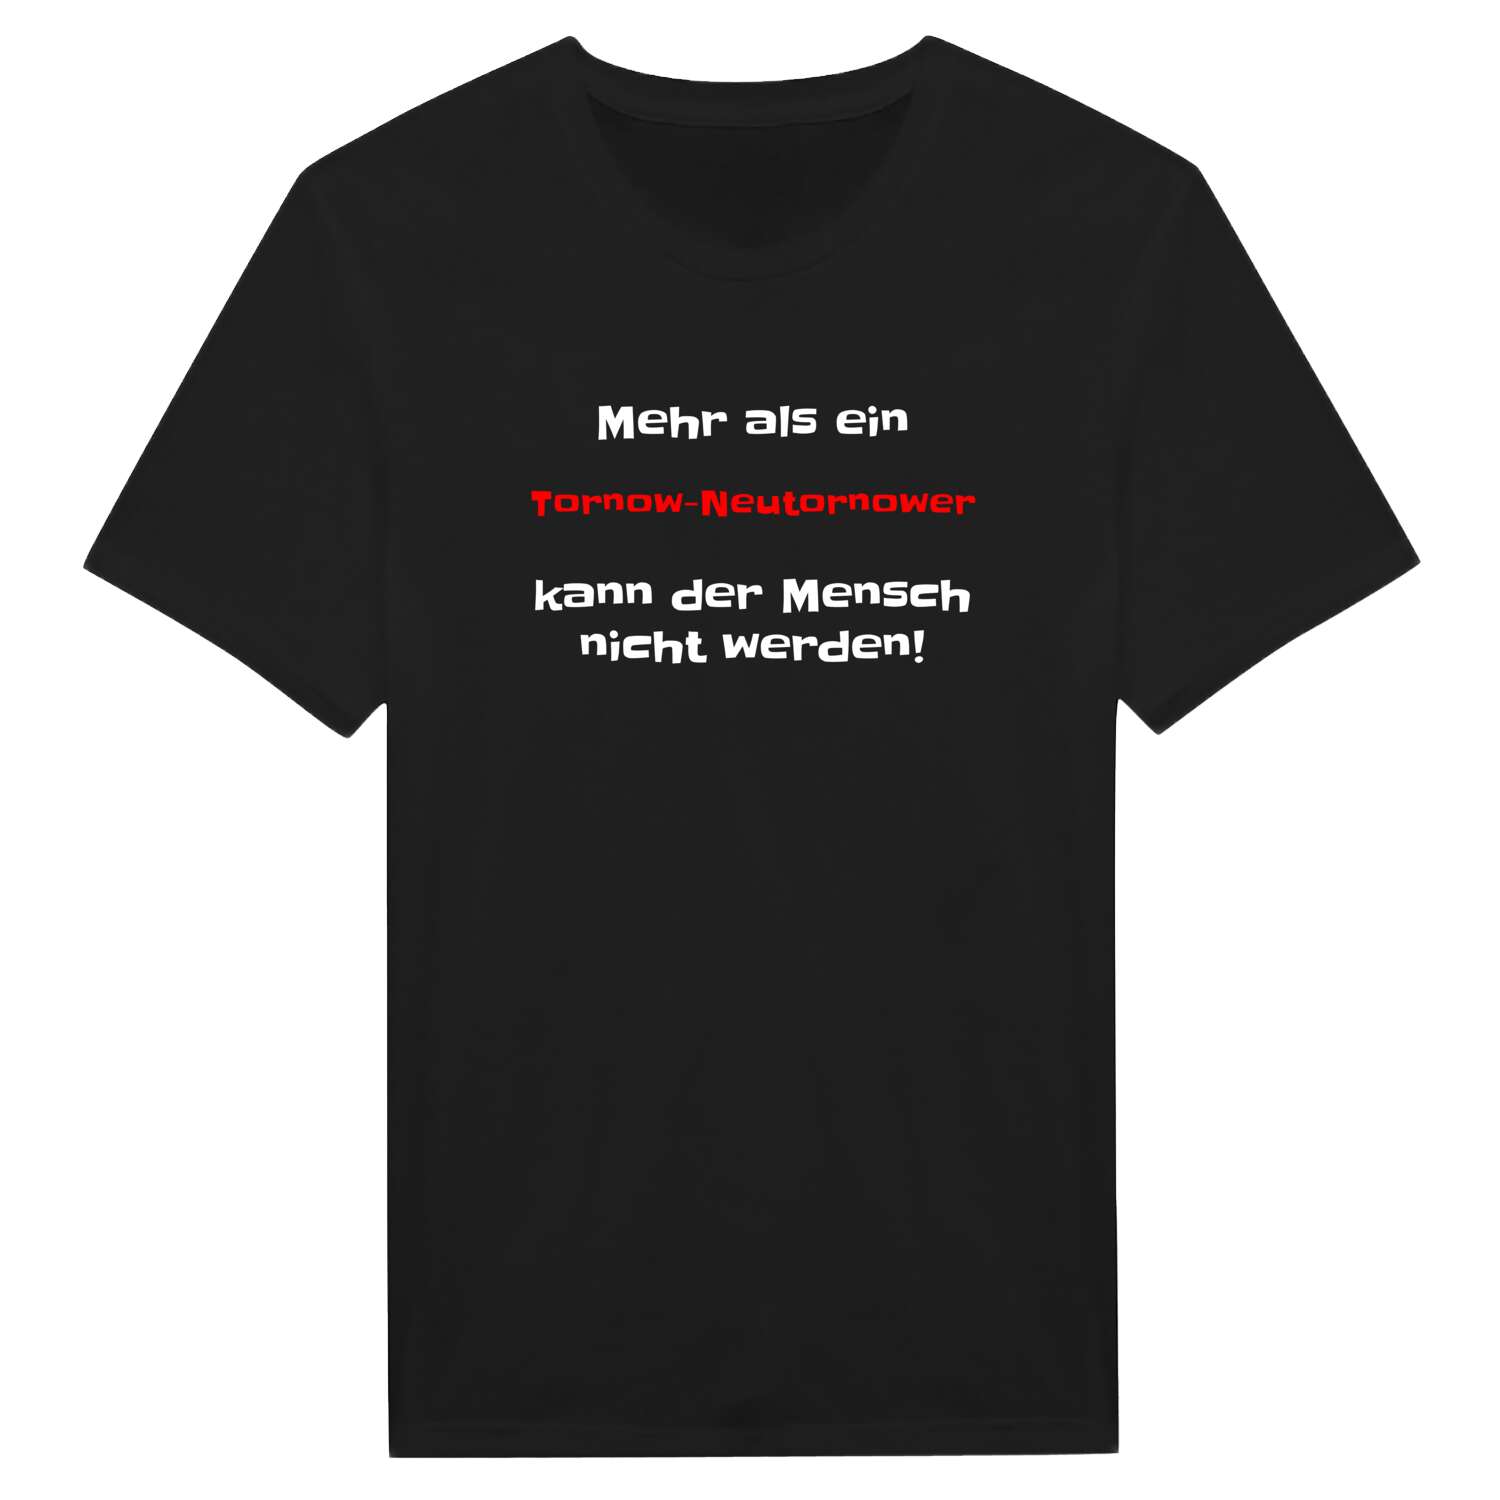 Tornow-Neutornow T-Shirt »Mehr als ein«